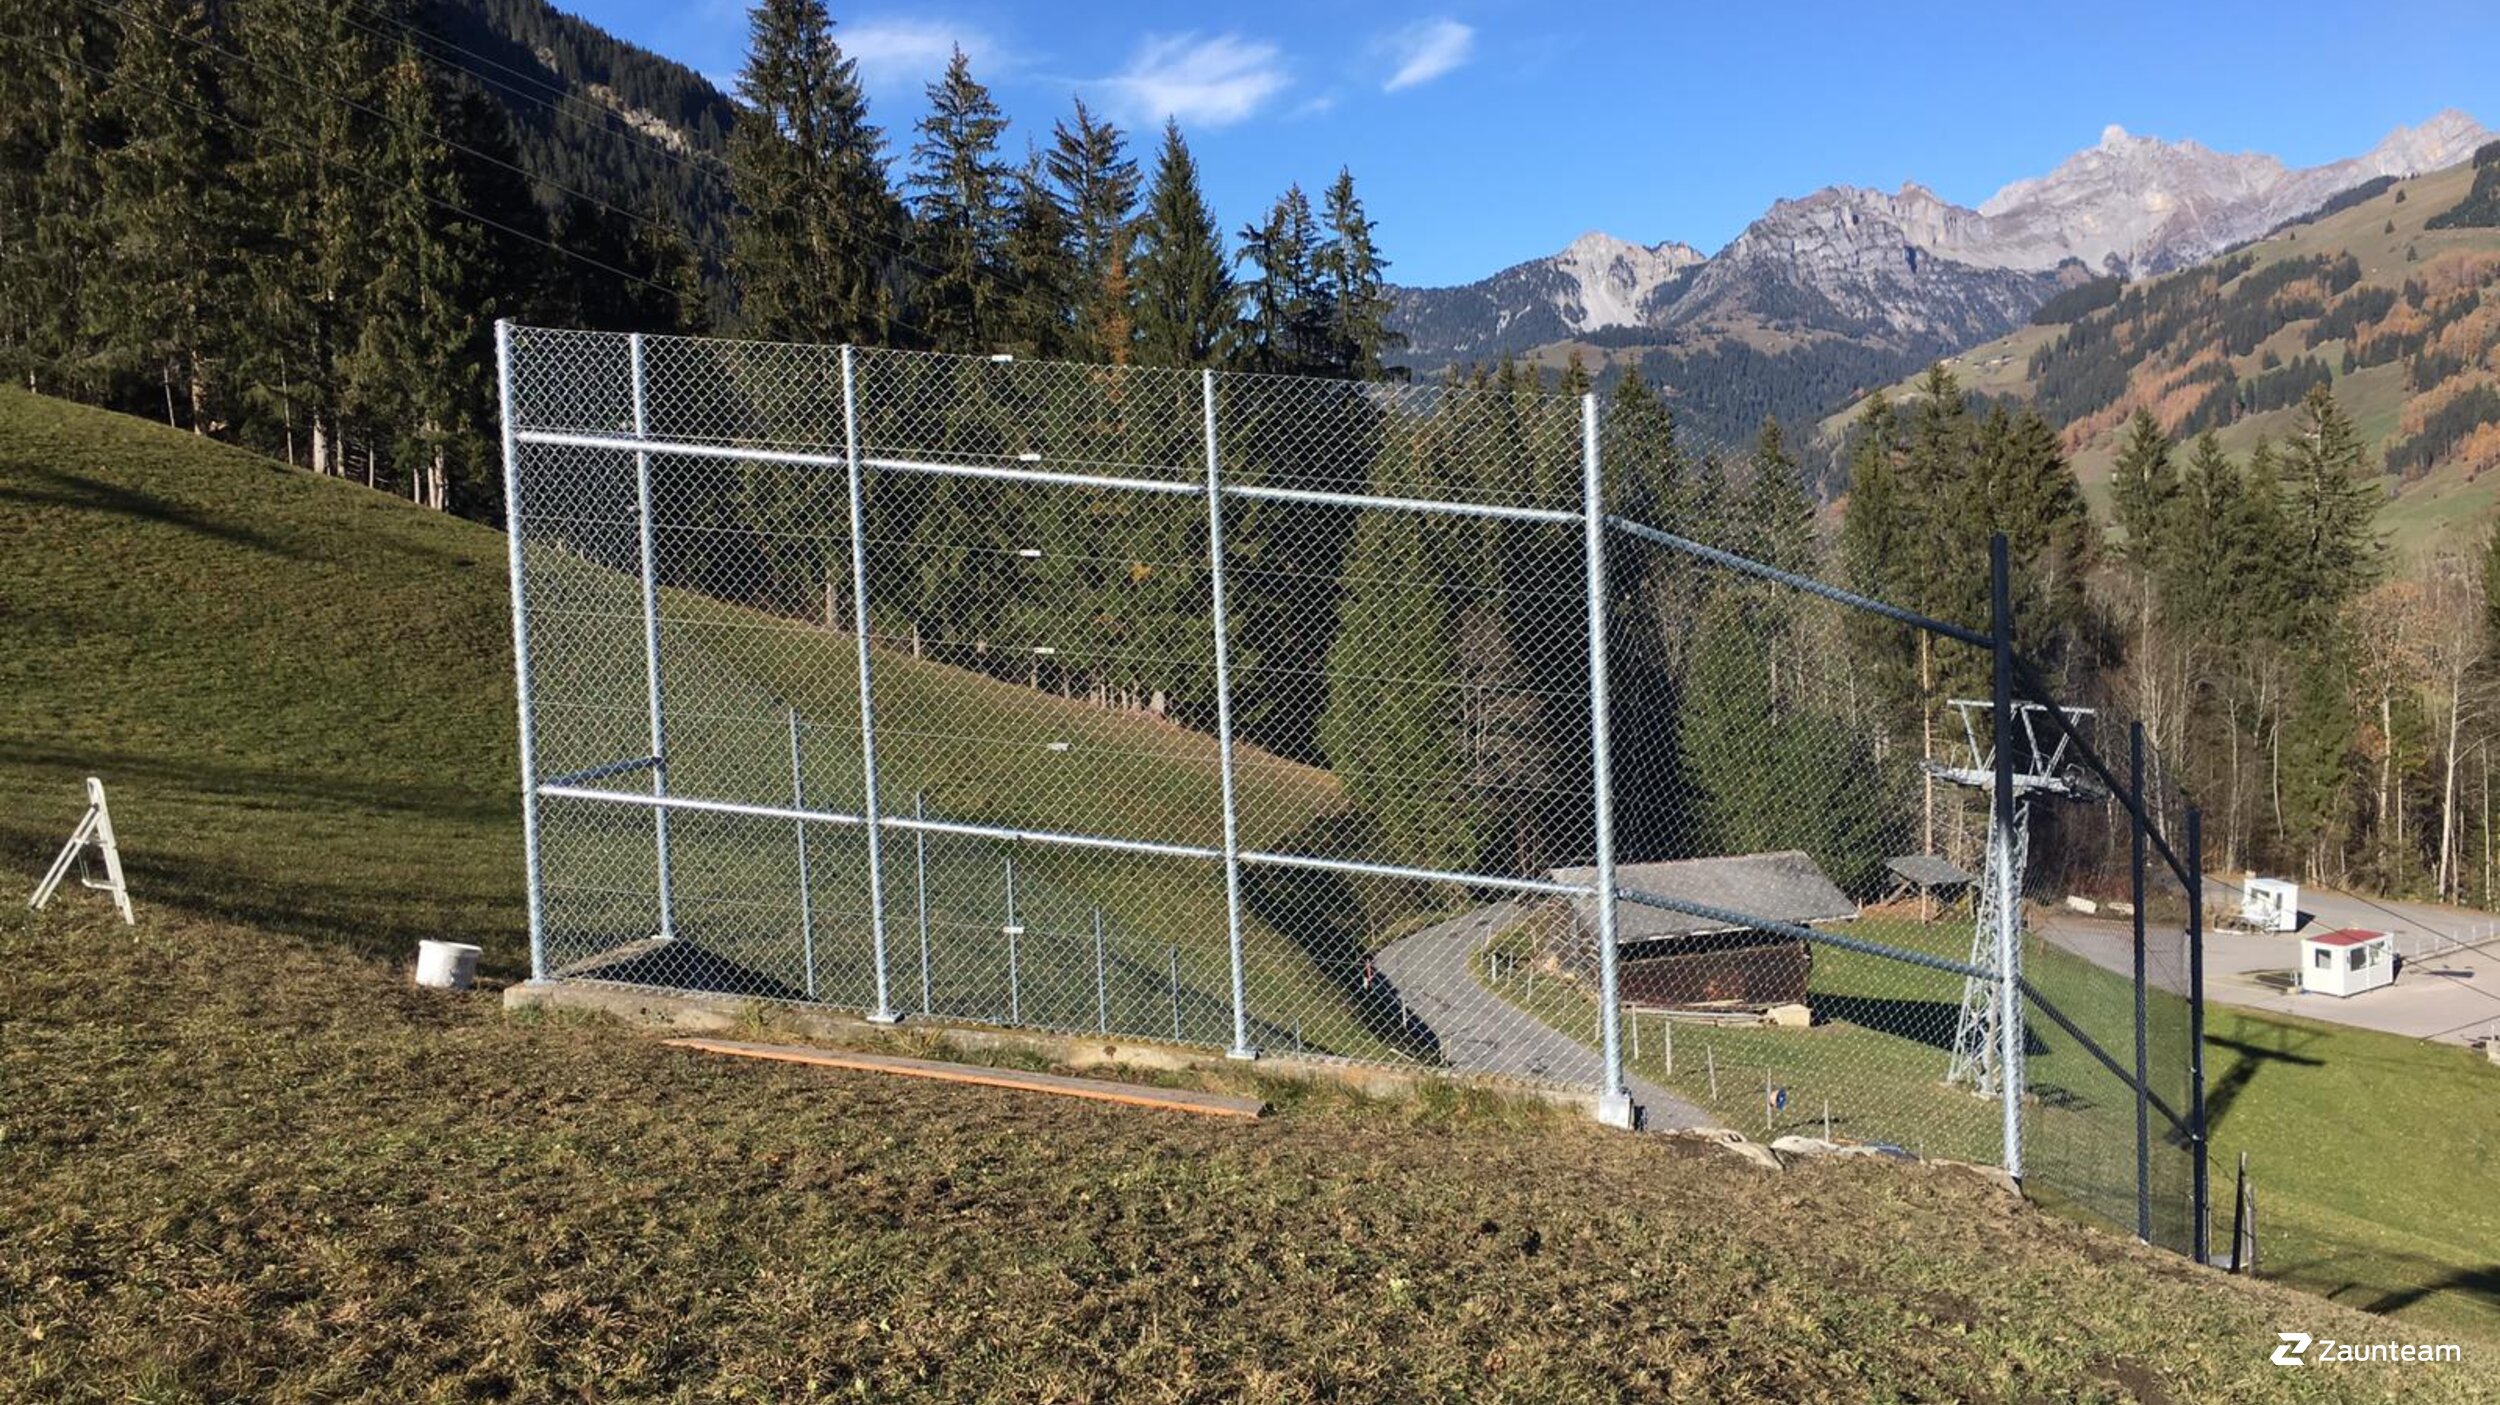 Grillage diagonal de 2018 à 3775 Lenk Suisse de Zaunteam Berner Oberland.